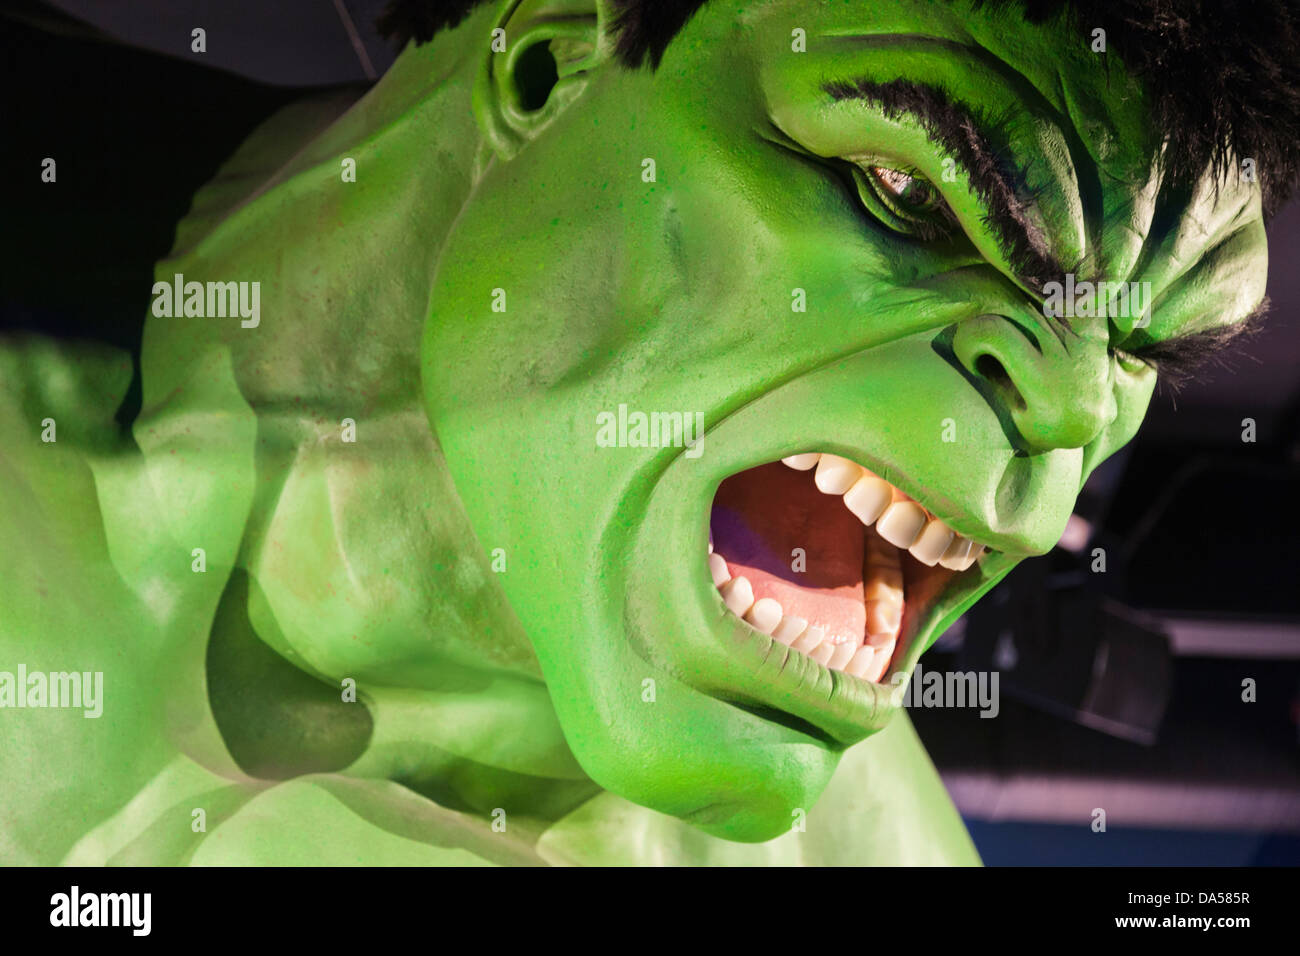 England, London, Madame Tussauds, staunen, dass Superhelden Zentrum, Statue von Incredible Hulk Befehl Stockfoto